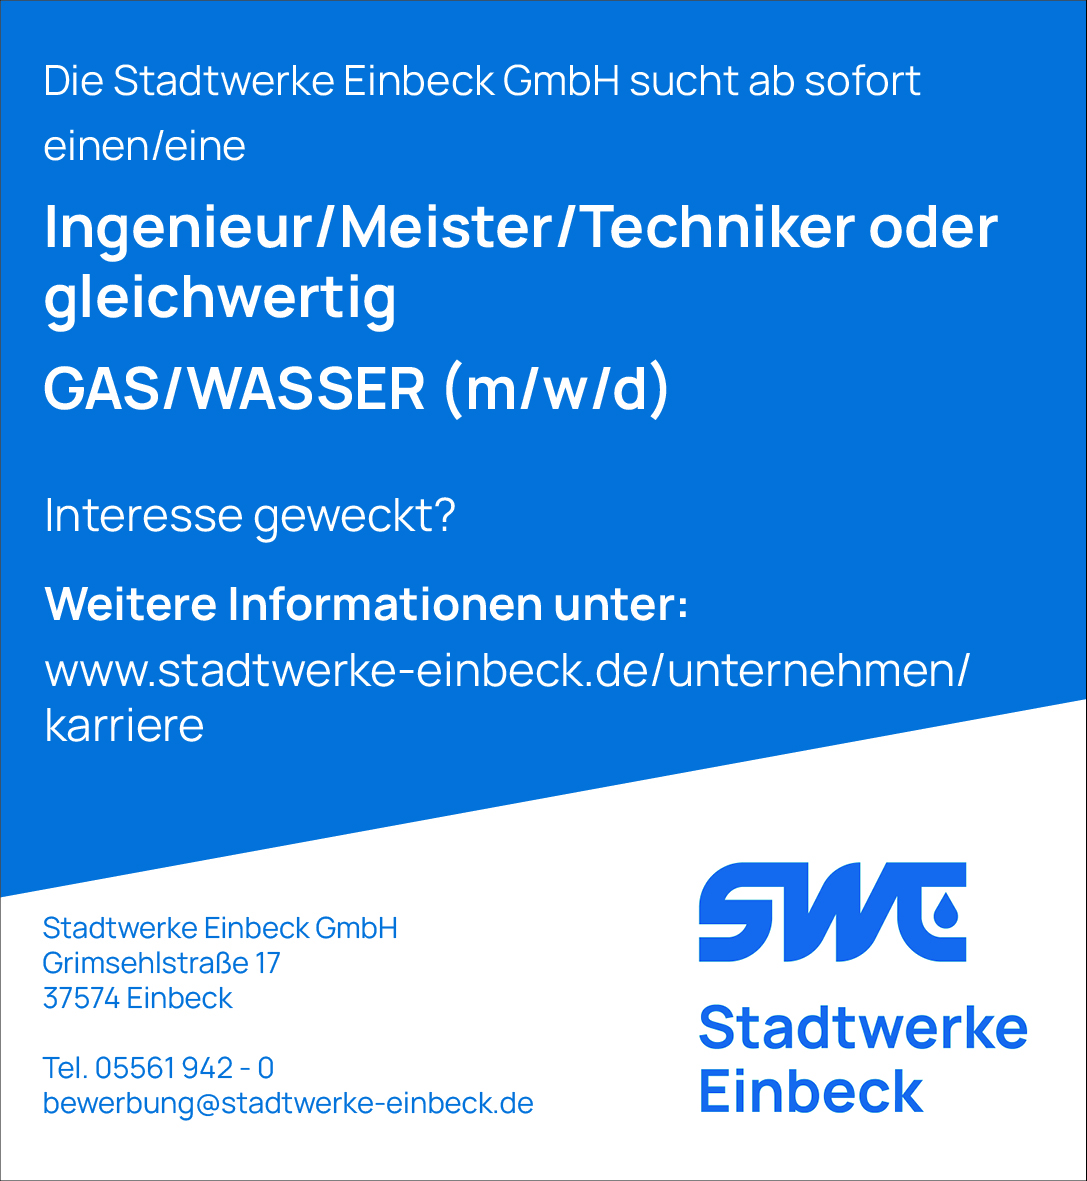 Ingenieur/Meister/Techniker oder gleichwertig GAS/WASSER (m/w/d) - Stadtwerke Einbeck GmbH